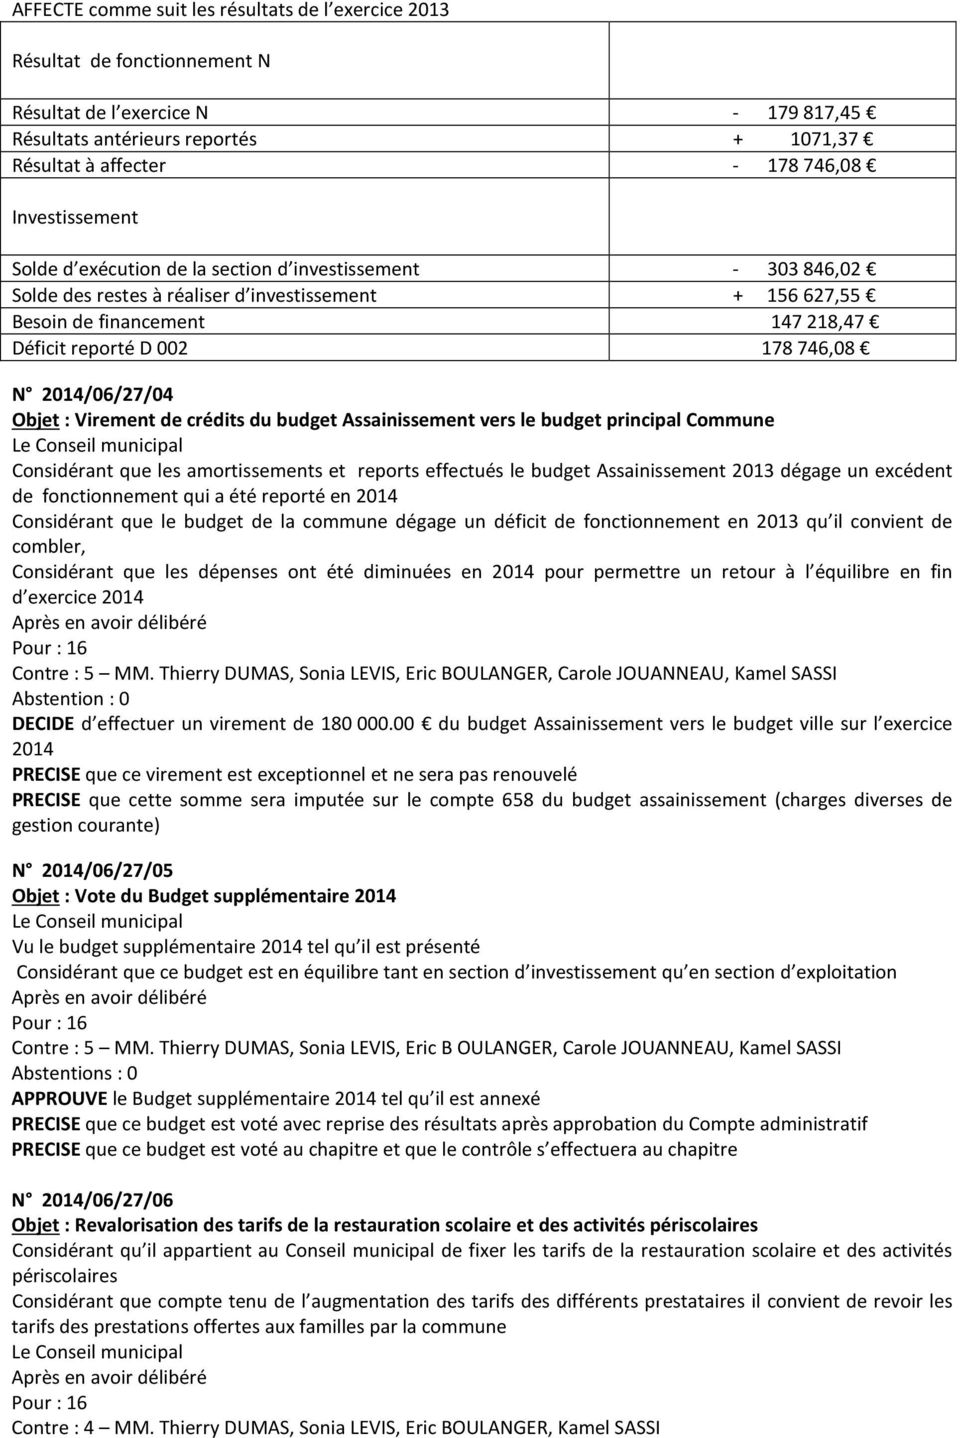 2014/06/27/04 Objet : Virement de crédits du budget Assainissement vers le budget principal Commune Considérant que les amortissements et reports effectués le budget Assainissement 2013 dégage un